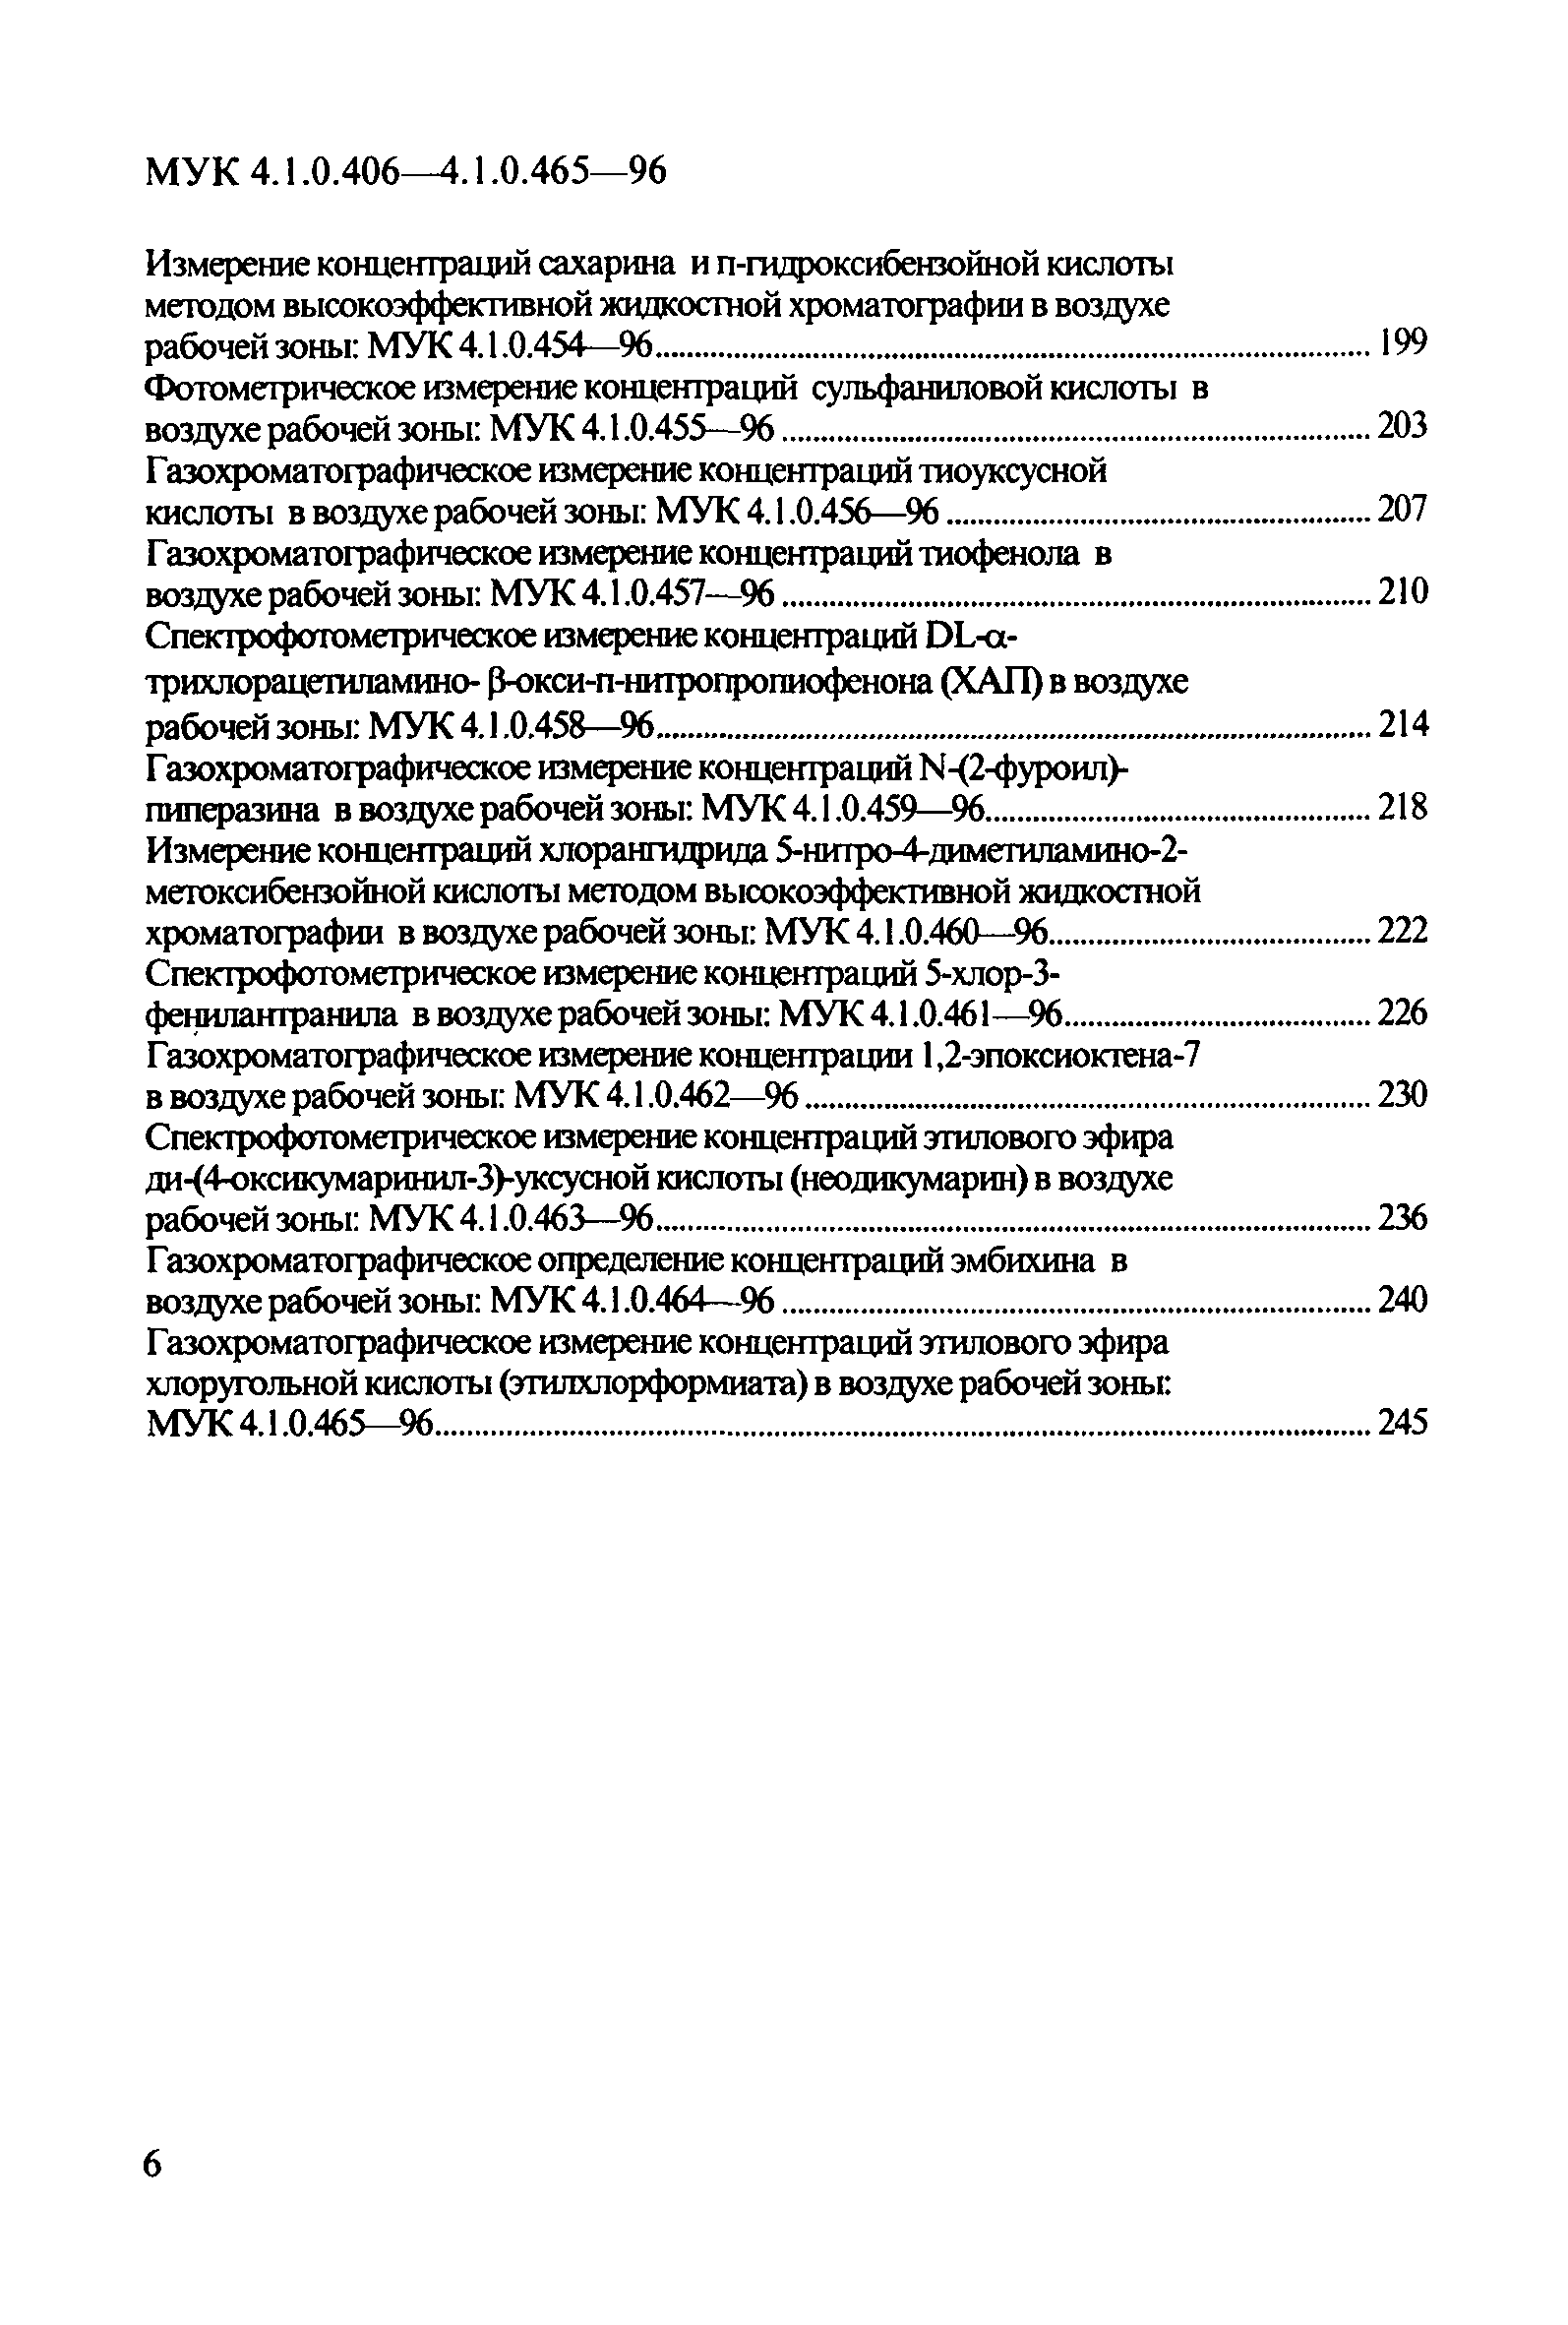 МУК 4.1.0.411-96